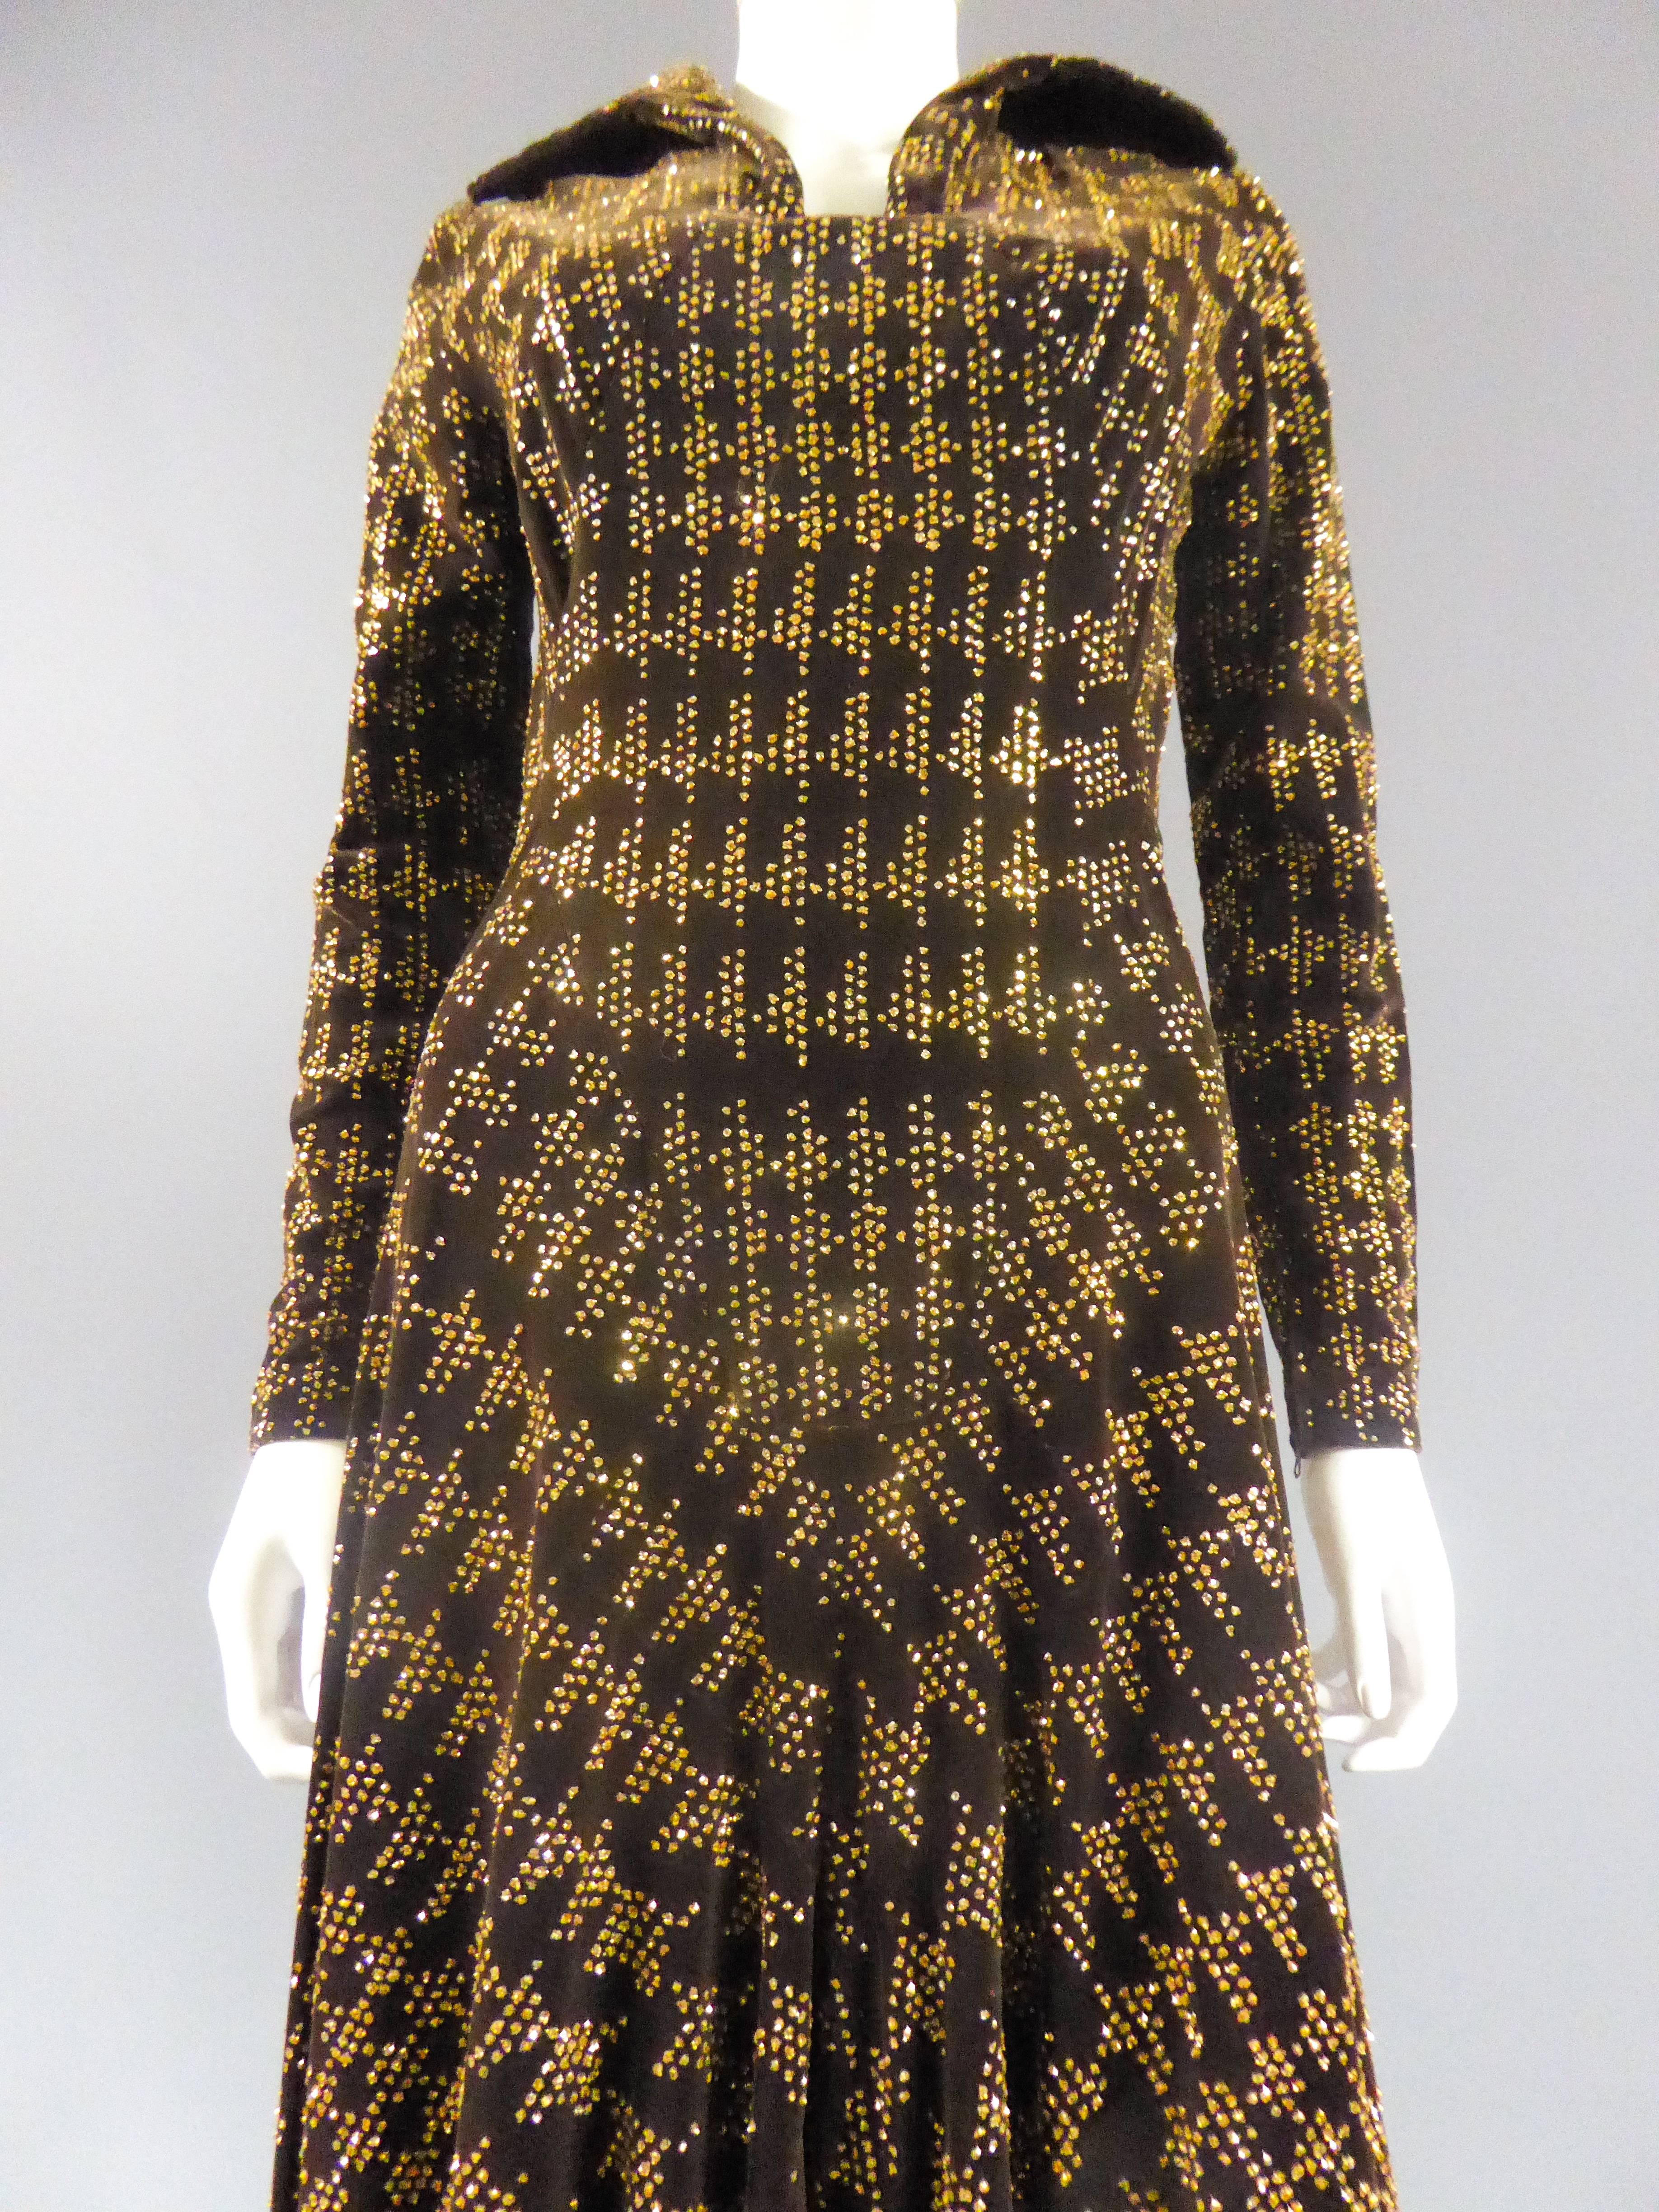 dress 1975